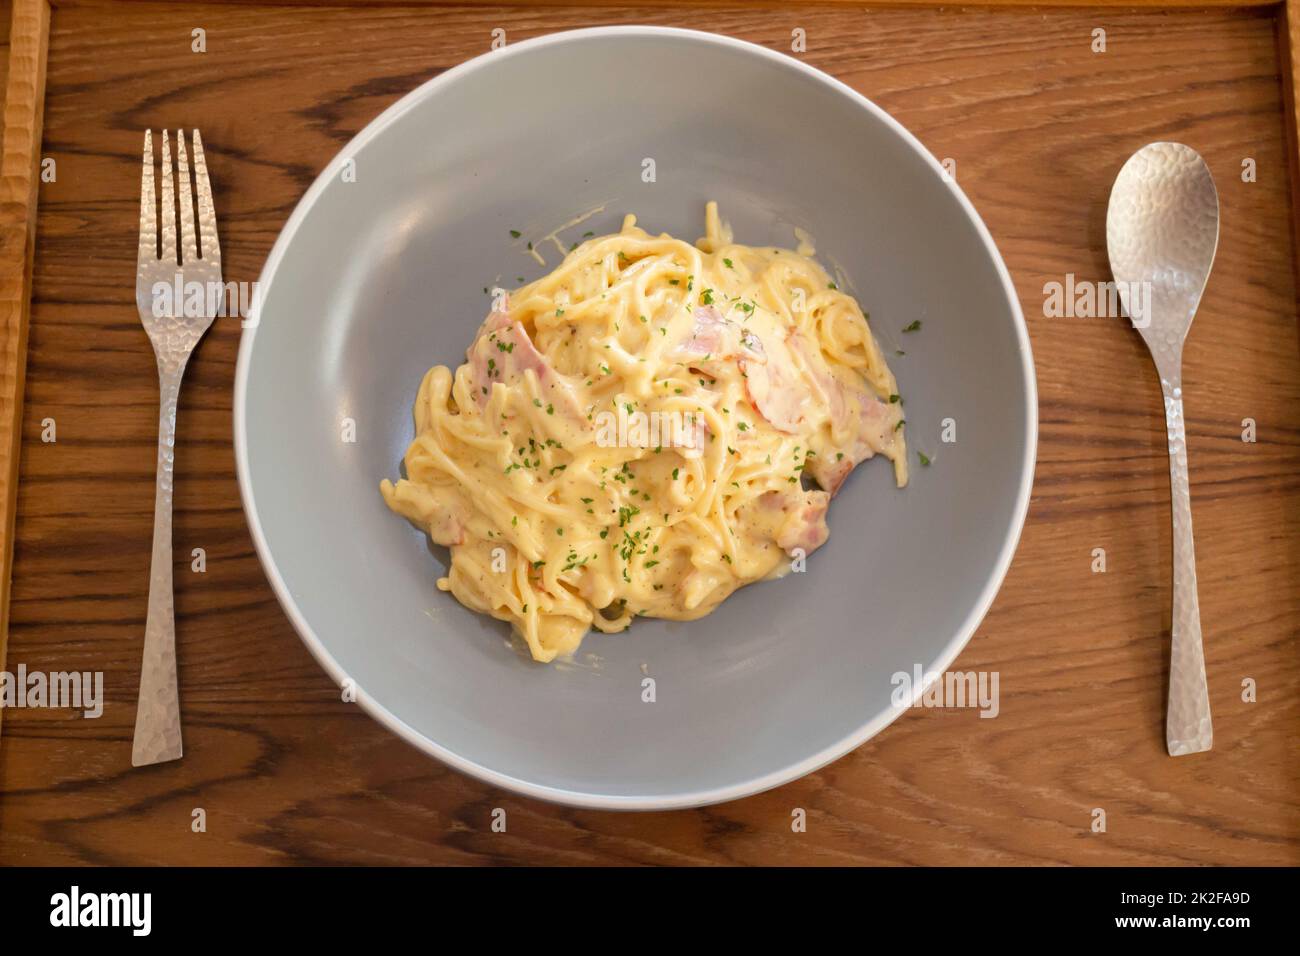 Pasta dish on wooden table Stock Photo